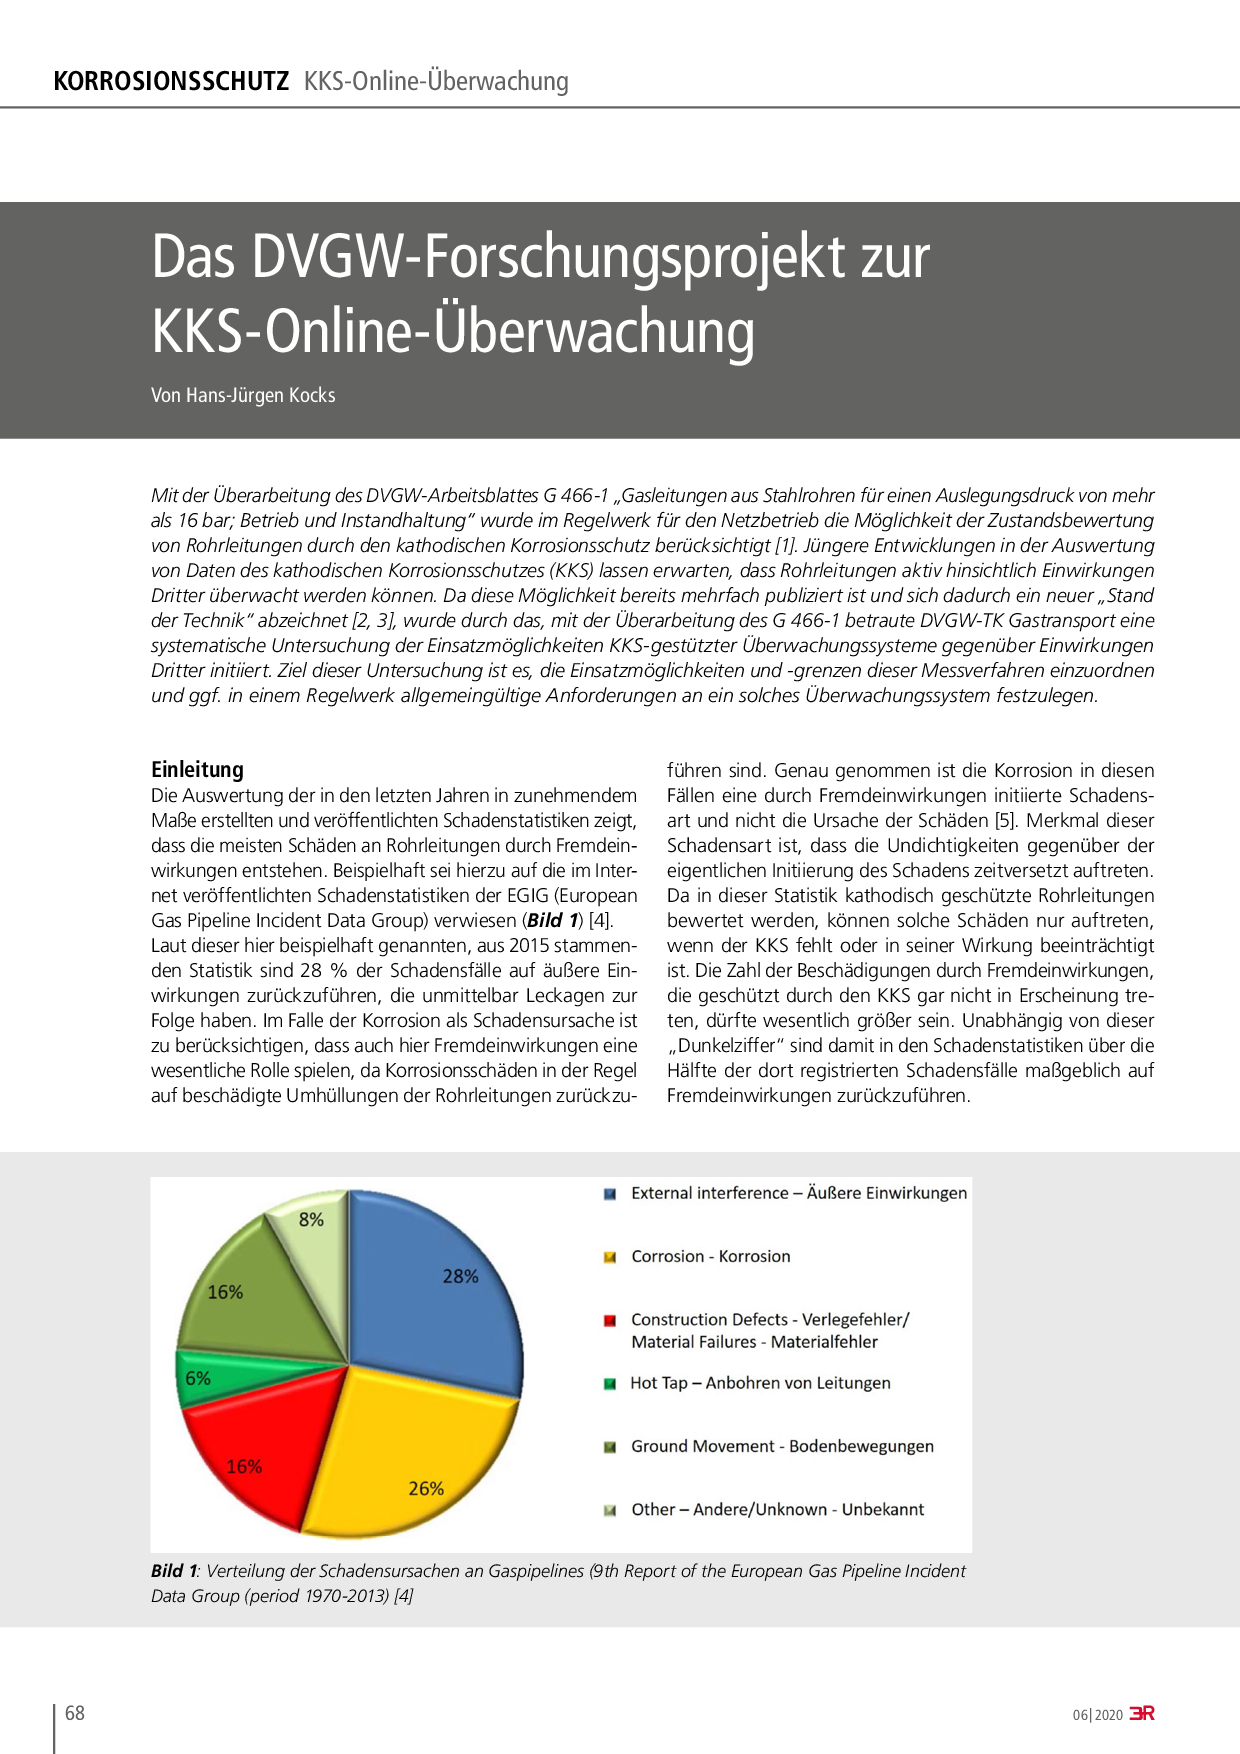 Das DVGW-Forschungsprojekt zur KKS-Online-Überwachung